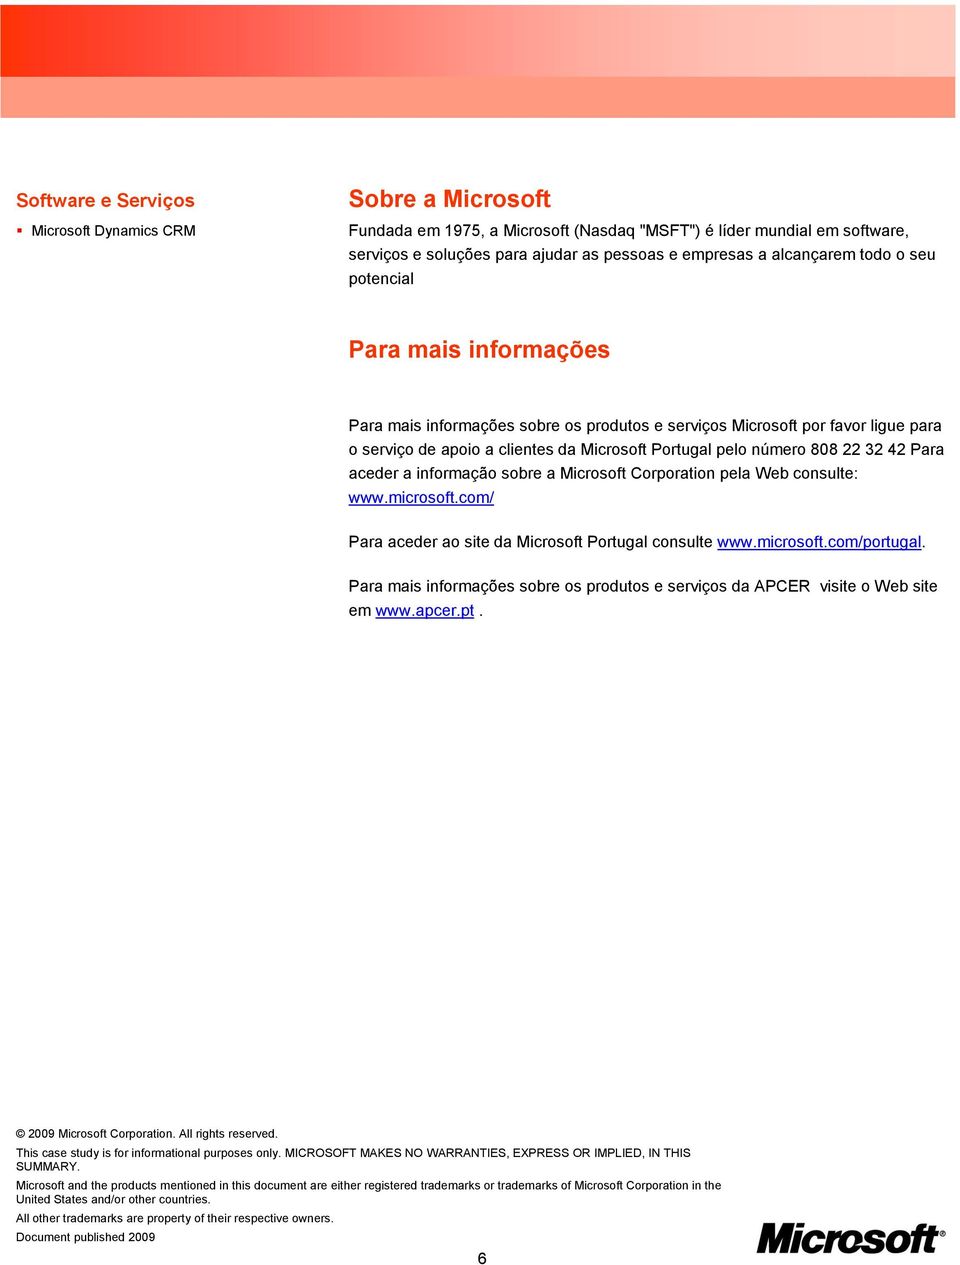 808 22 32 42 Para aceder a informação sobre a Microsoft Corporation pela Web consulte: www.microsoft.com/ Para aceder ao site da Microsoft Portugal consulte www.microsoft.com/portugal.